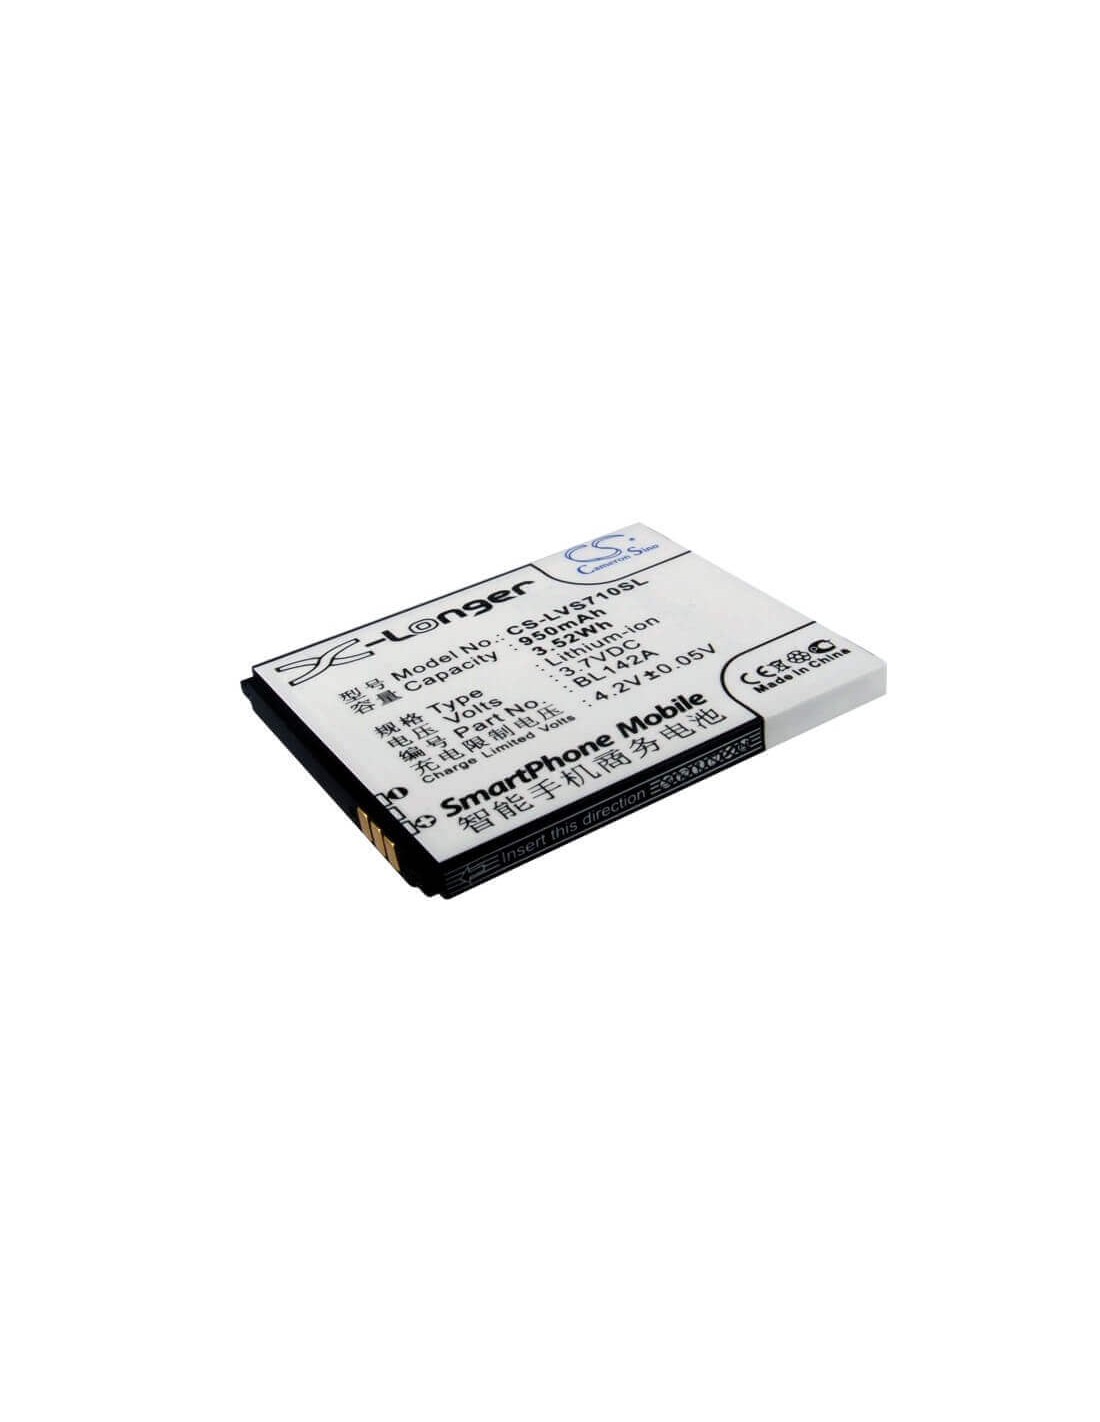 Battery for Lenovo S710, S910, I325 3.7V, 950mAh - 3.52Wh